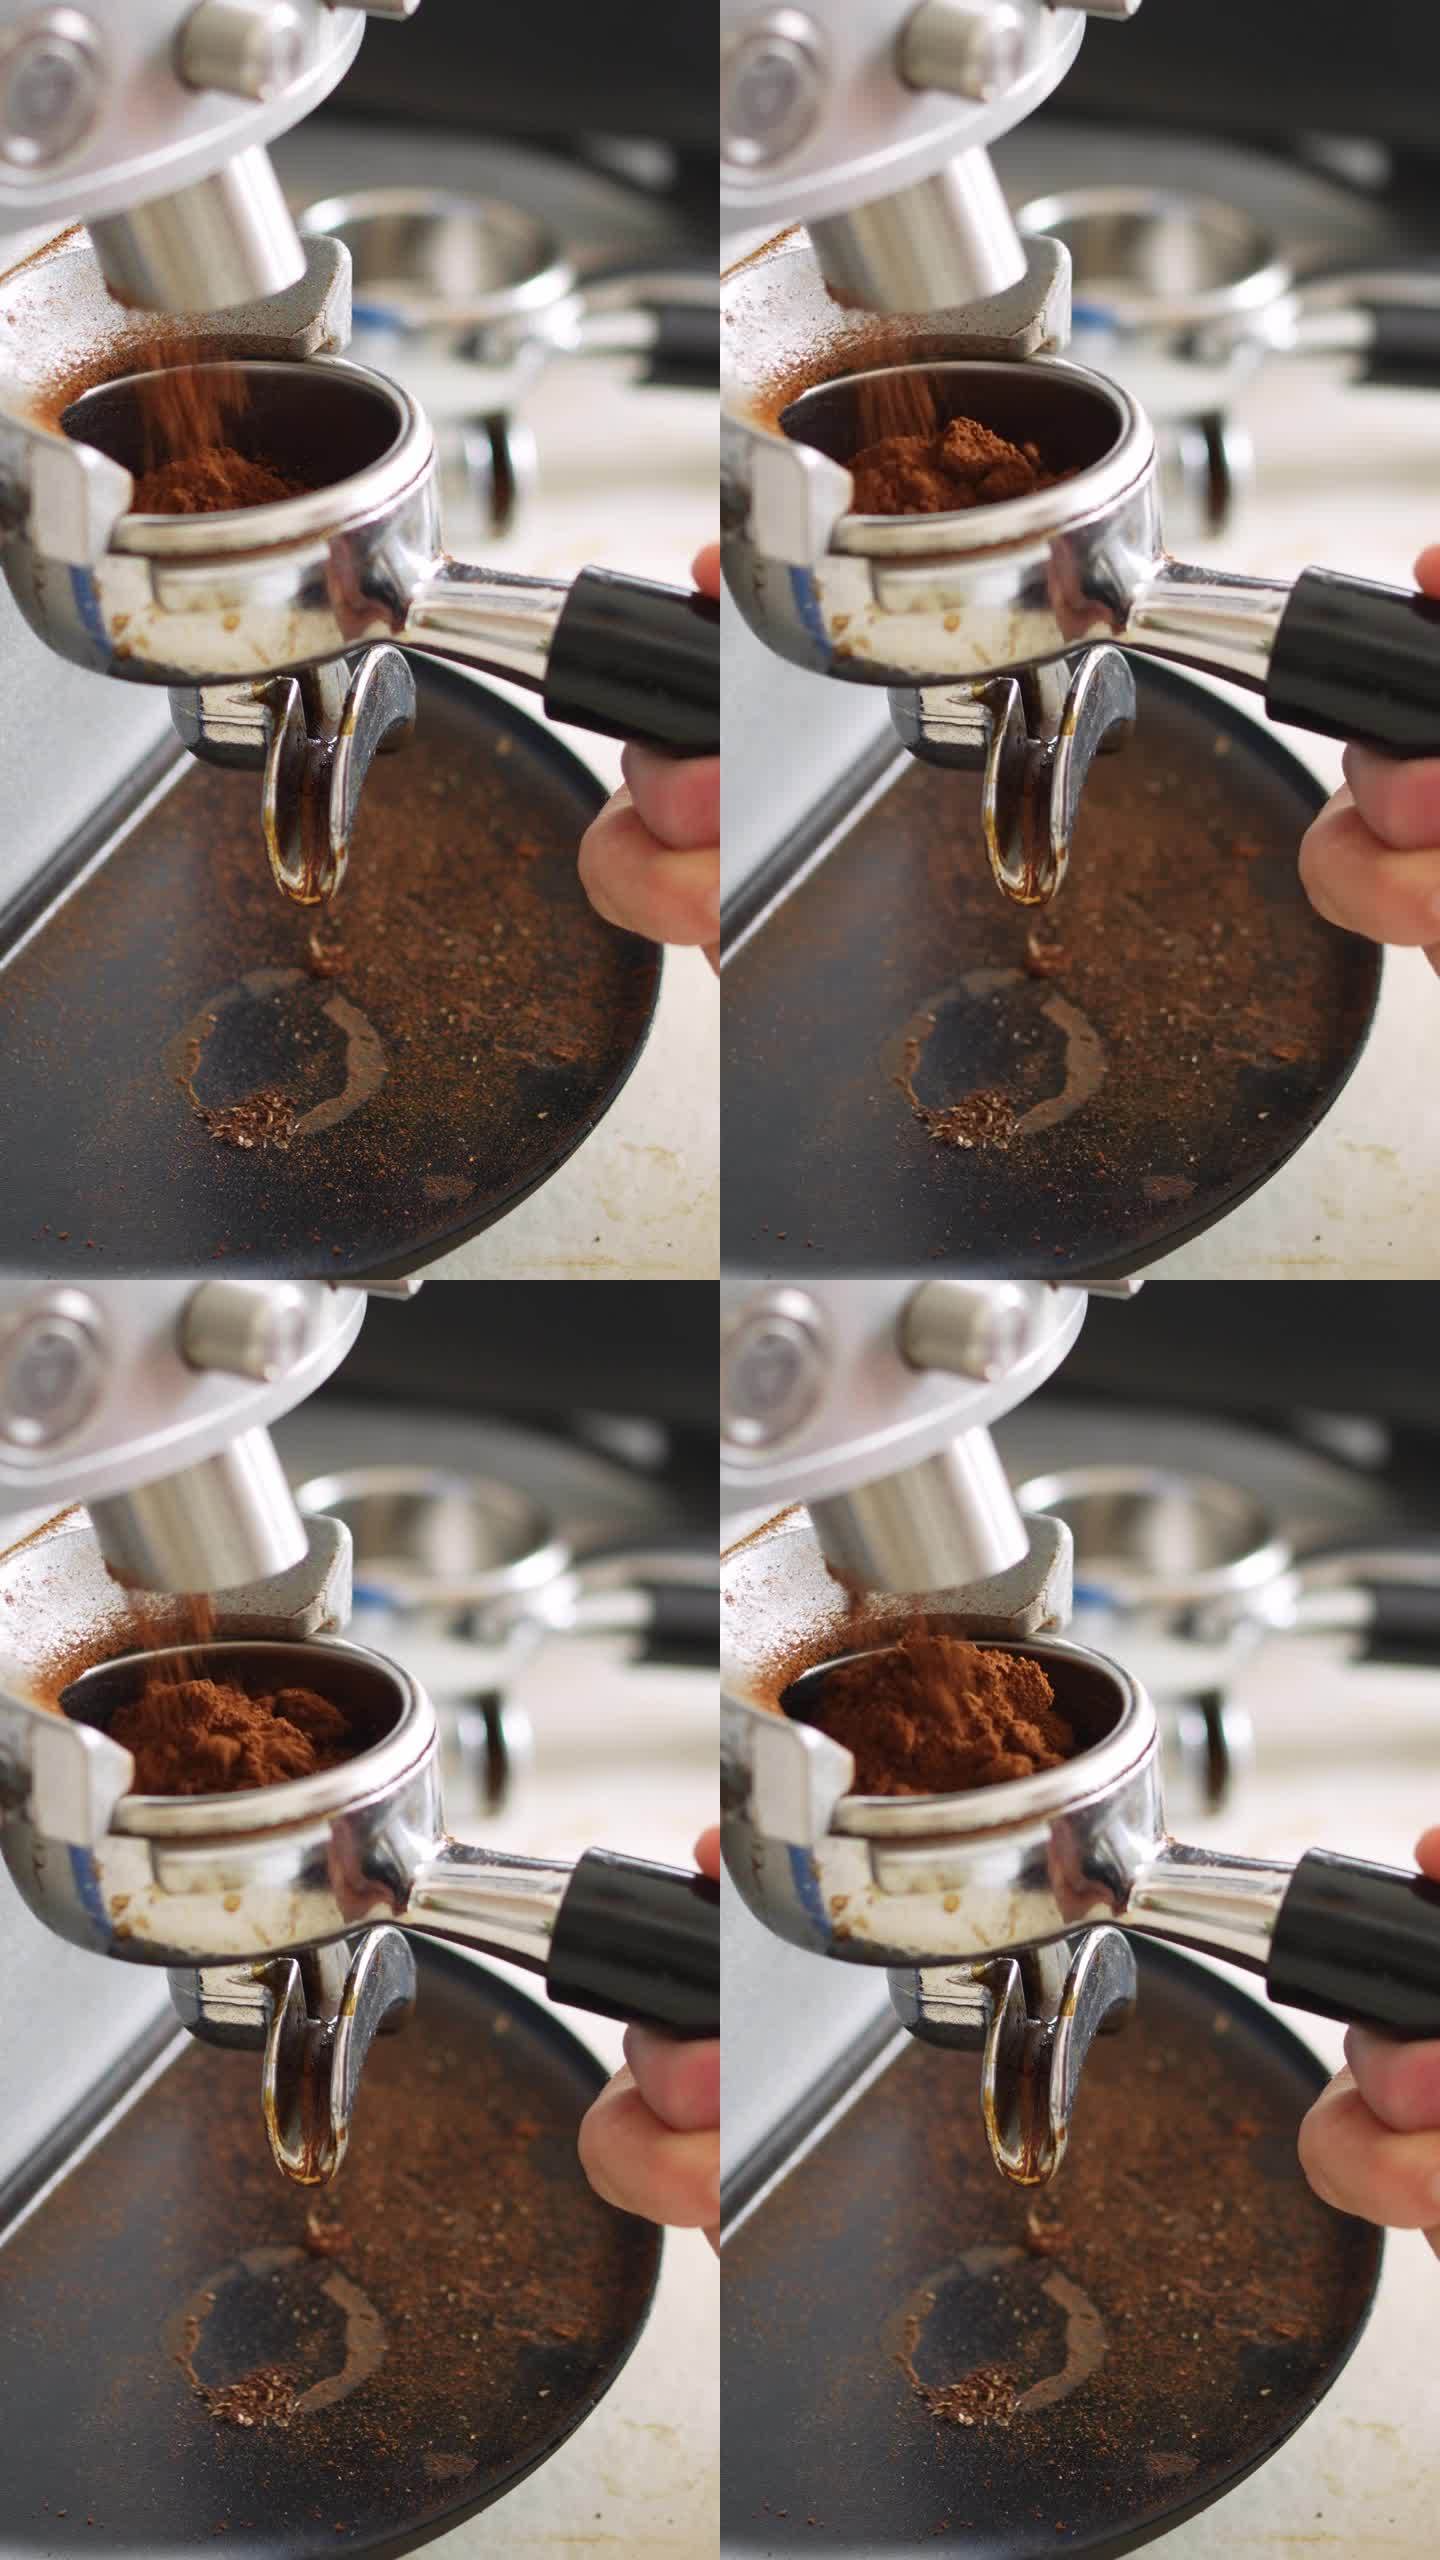 咖啡师把咖啡渣放进咖啡机里